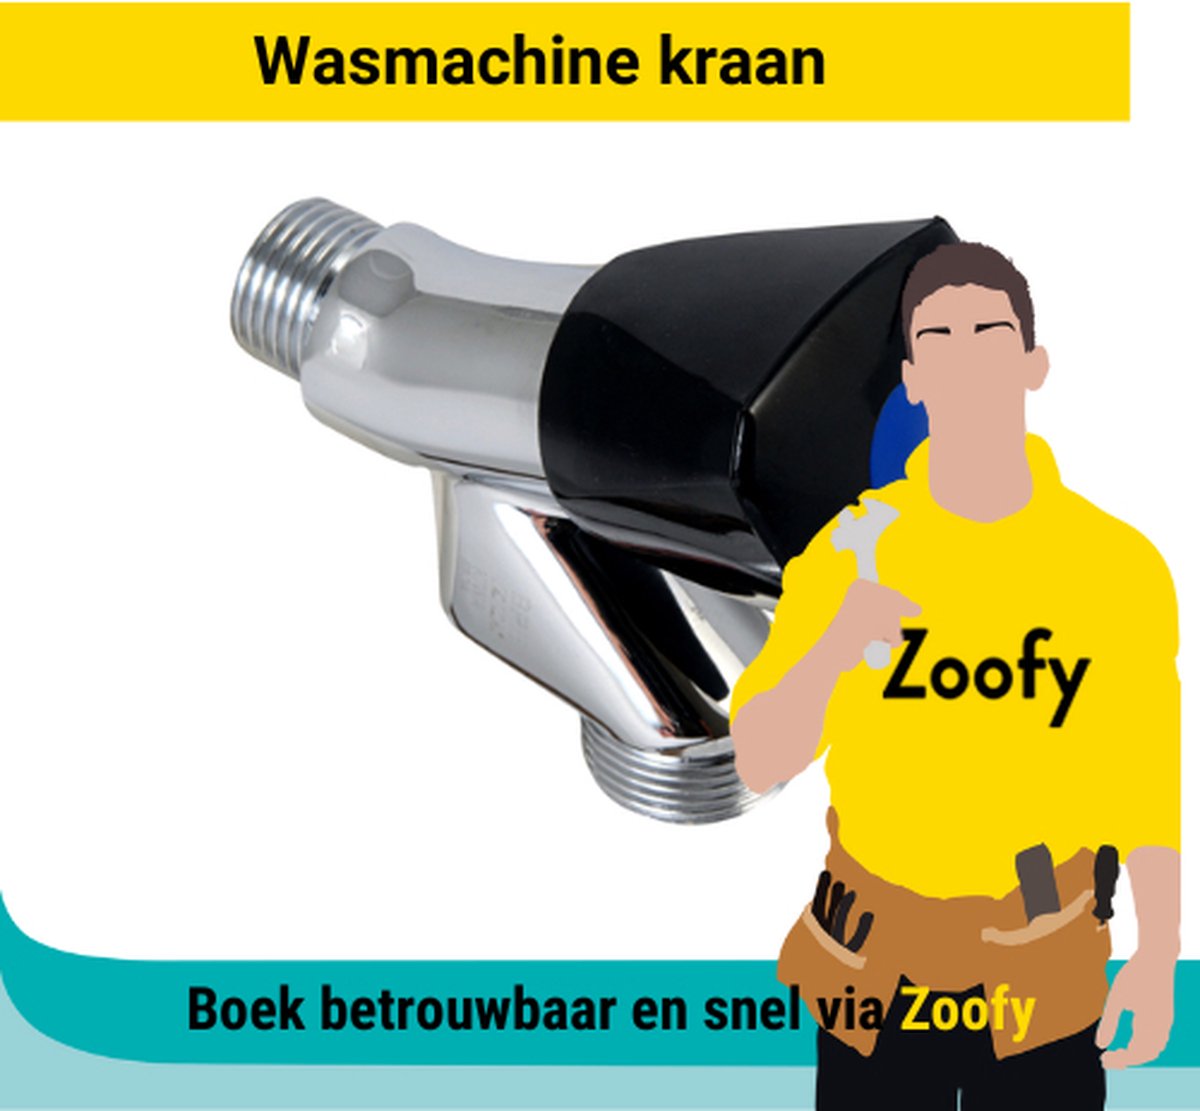 Installatie wasmachinekraan - Door Zoofy in samenwerking met bol.com - Installatie-afspraak gepland binnen 1 werkdag